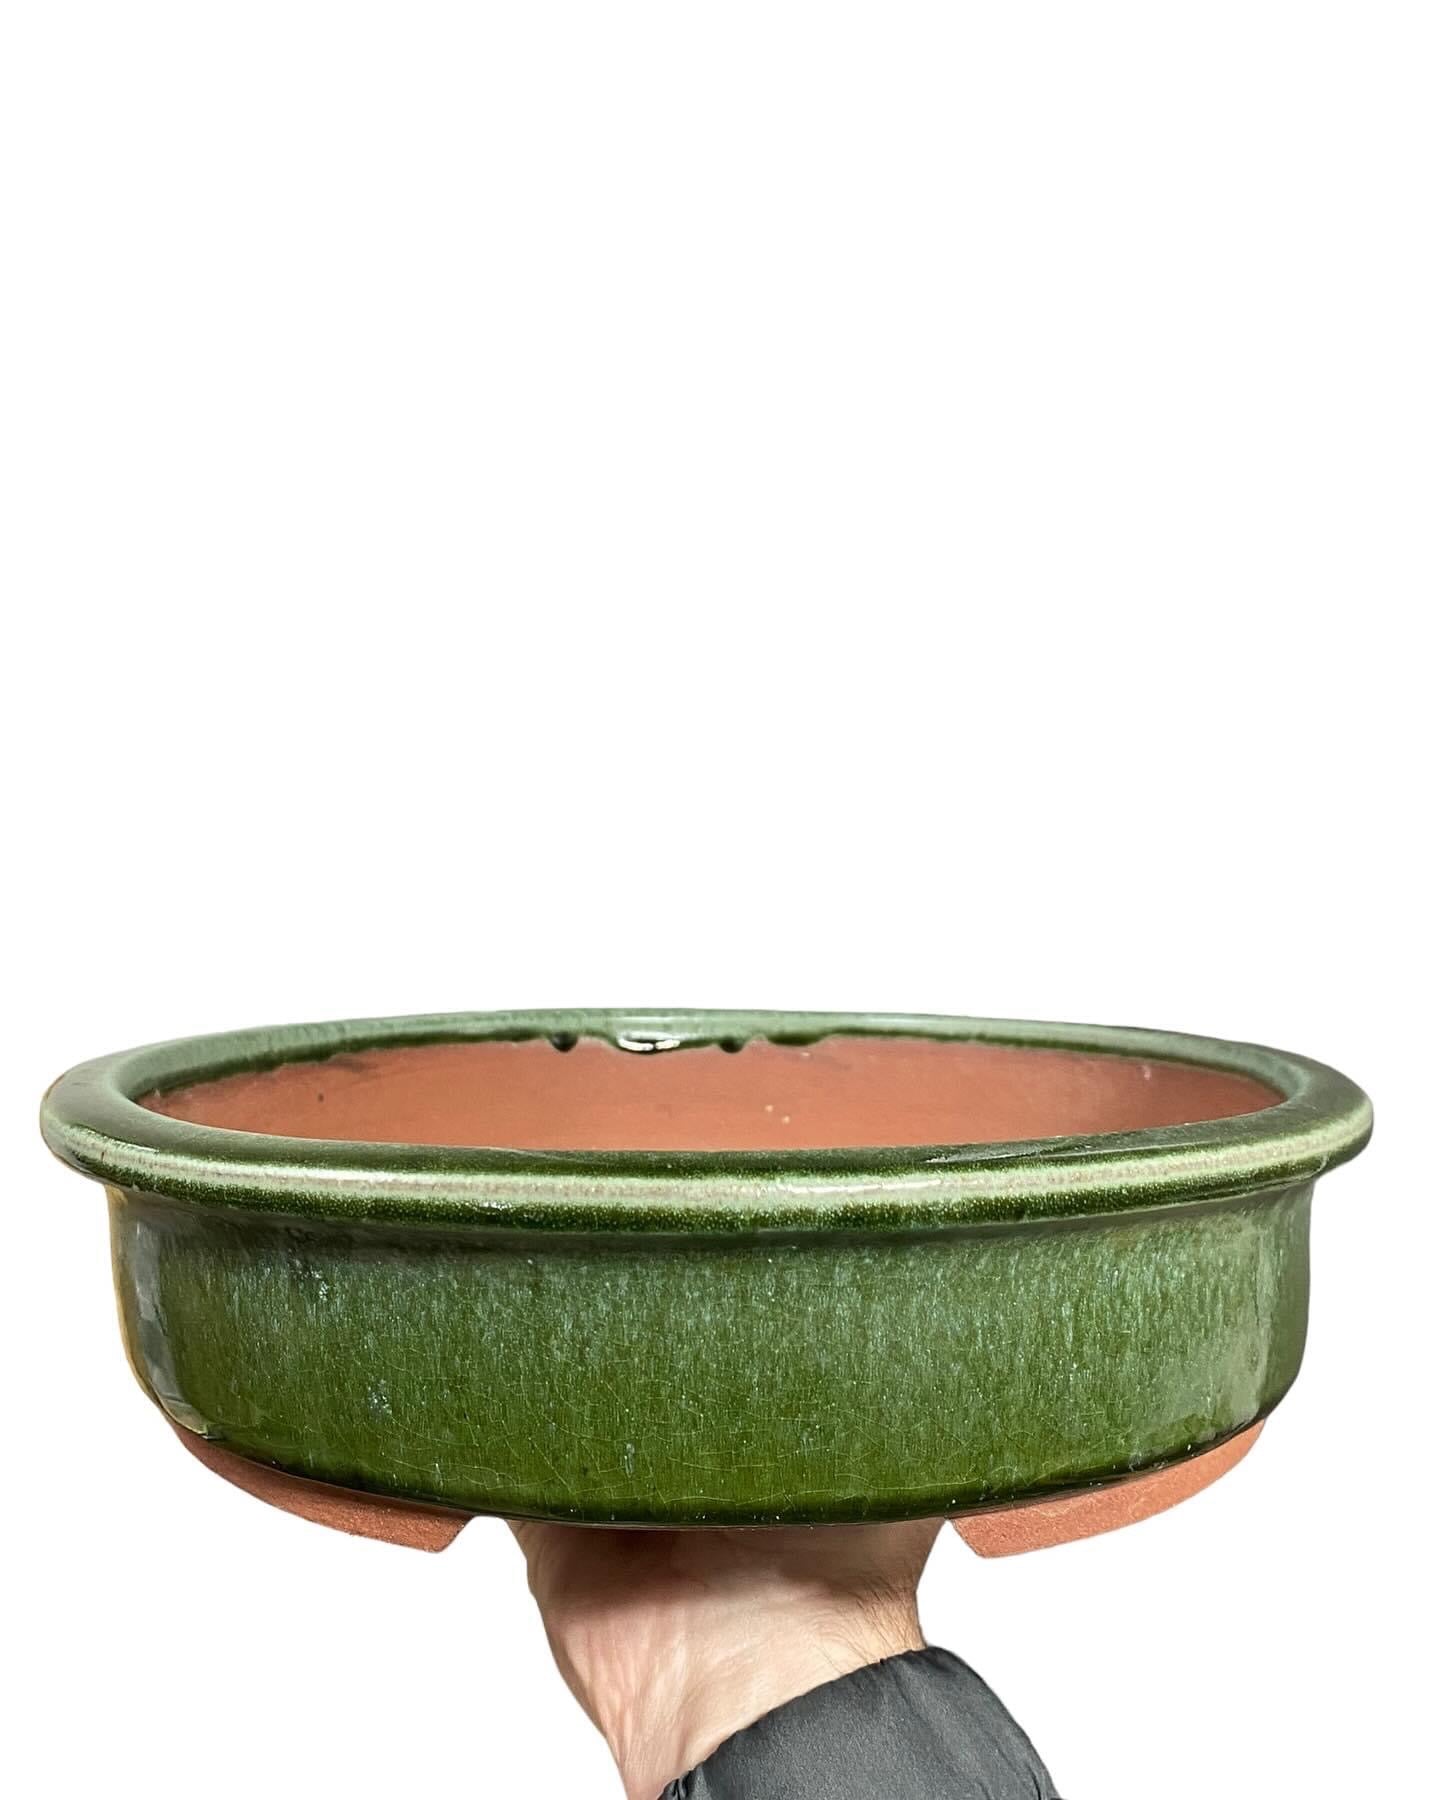 Yozan - Huge and Beautifully Glazed Bonsai Pot (15-5/8 wide)